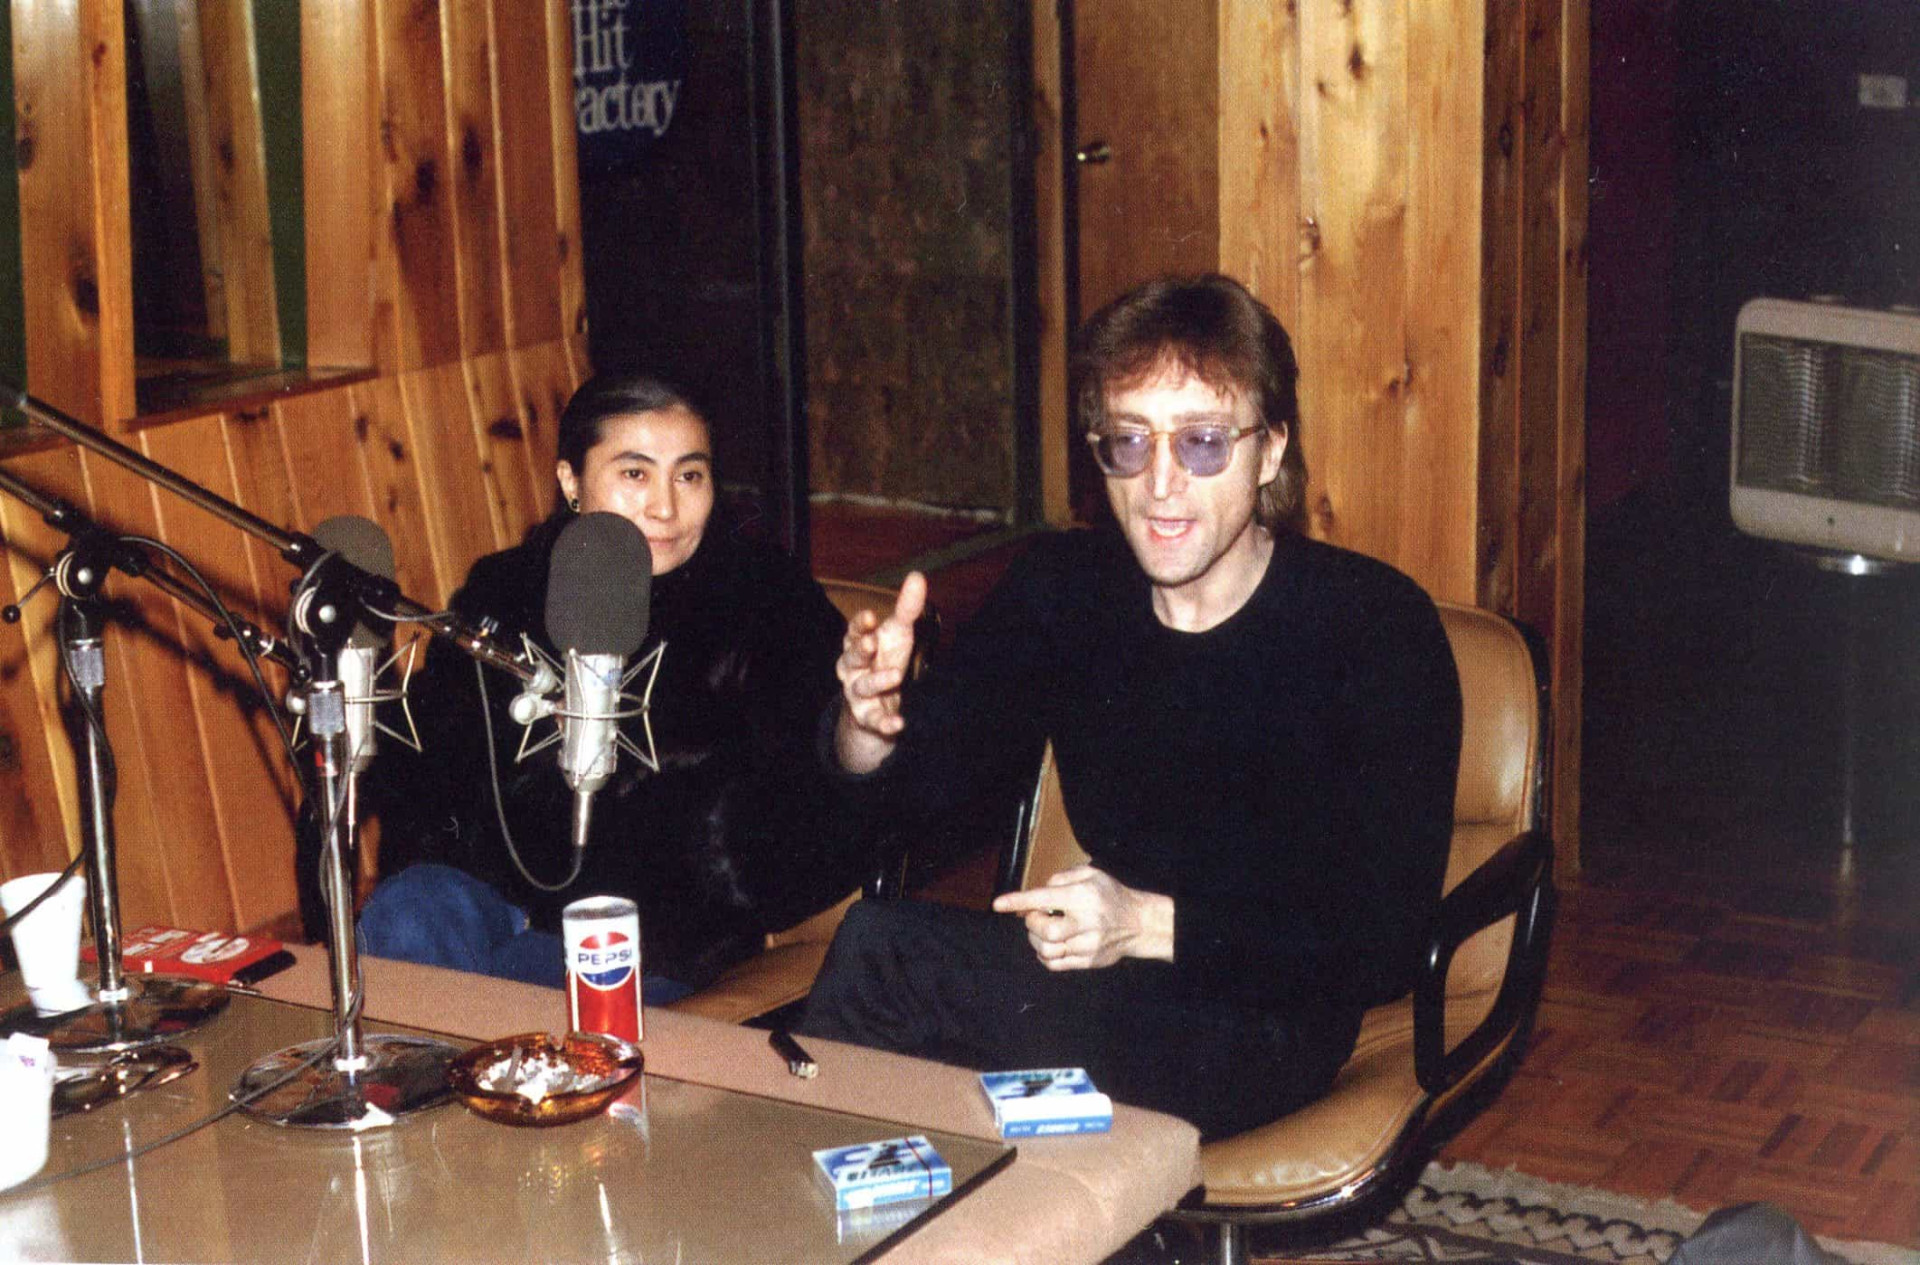 <p>John Lennon était une fois de plus flatté par la presse musicale. Des interviews dans les journaux et les magazines avait suivi, mais aucune interview télévisée n'avait été organisée. Andy Peebles, présentateur radio et télé anglais, avait réussi à obtenir une interview exclusive avec le chanteur, dans les studios d'enregistrement new yorkais de l'artiste, le 6 décembre 1980 (moment immortalisé sur cette photo). Il s'agissait alors de sa dernière apparition à la radio.</p><p><a href="https://www.msn.com/fr-ca/community/channel/vid-7xx8mnucu55yw63we9va2gwr7uihbxwc68fxqp25x6tg4ftibpra?cvid=94631541bc0f4f89bfd59158d696ad7e">Suivez-nous et accédez tous les jours à du contenu exclusif</a></p>